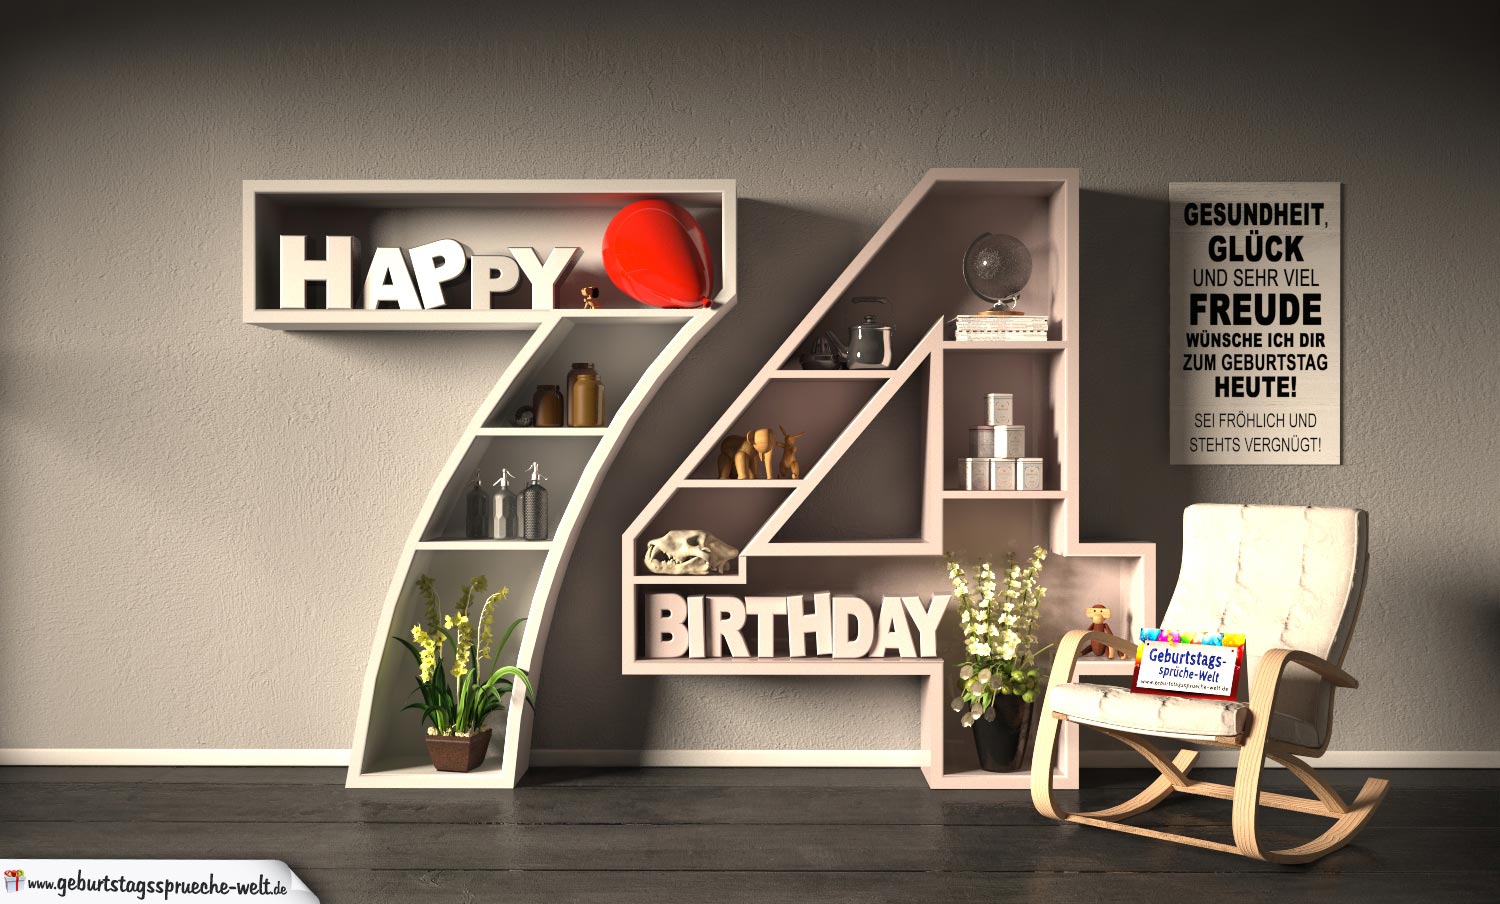 44++ Sprueche zum 75 geburtstag , Kostenlose Geburtstagskarte Happy Birthday mit Spruch zum 74. Geburtstag GeburtstagssprücheWelt